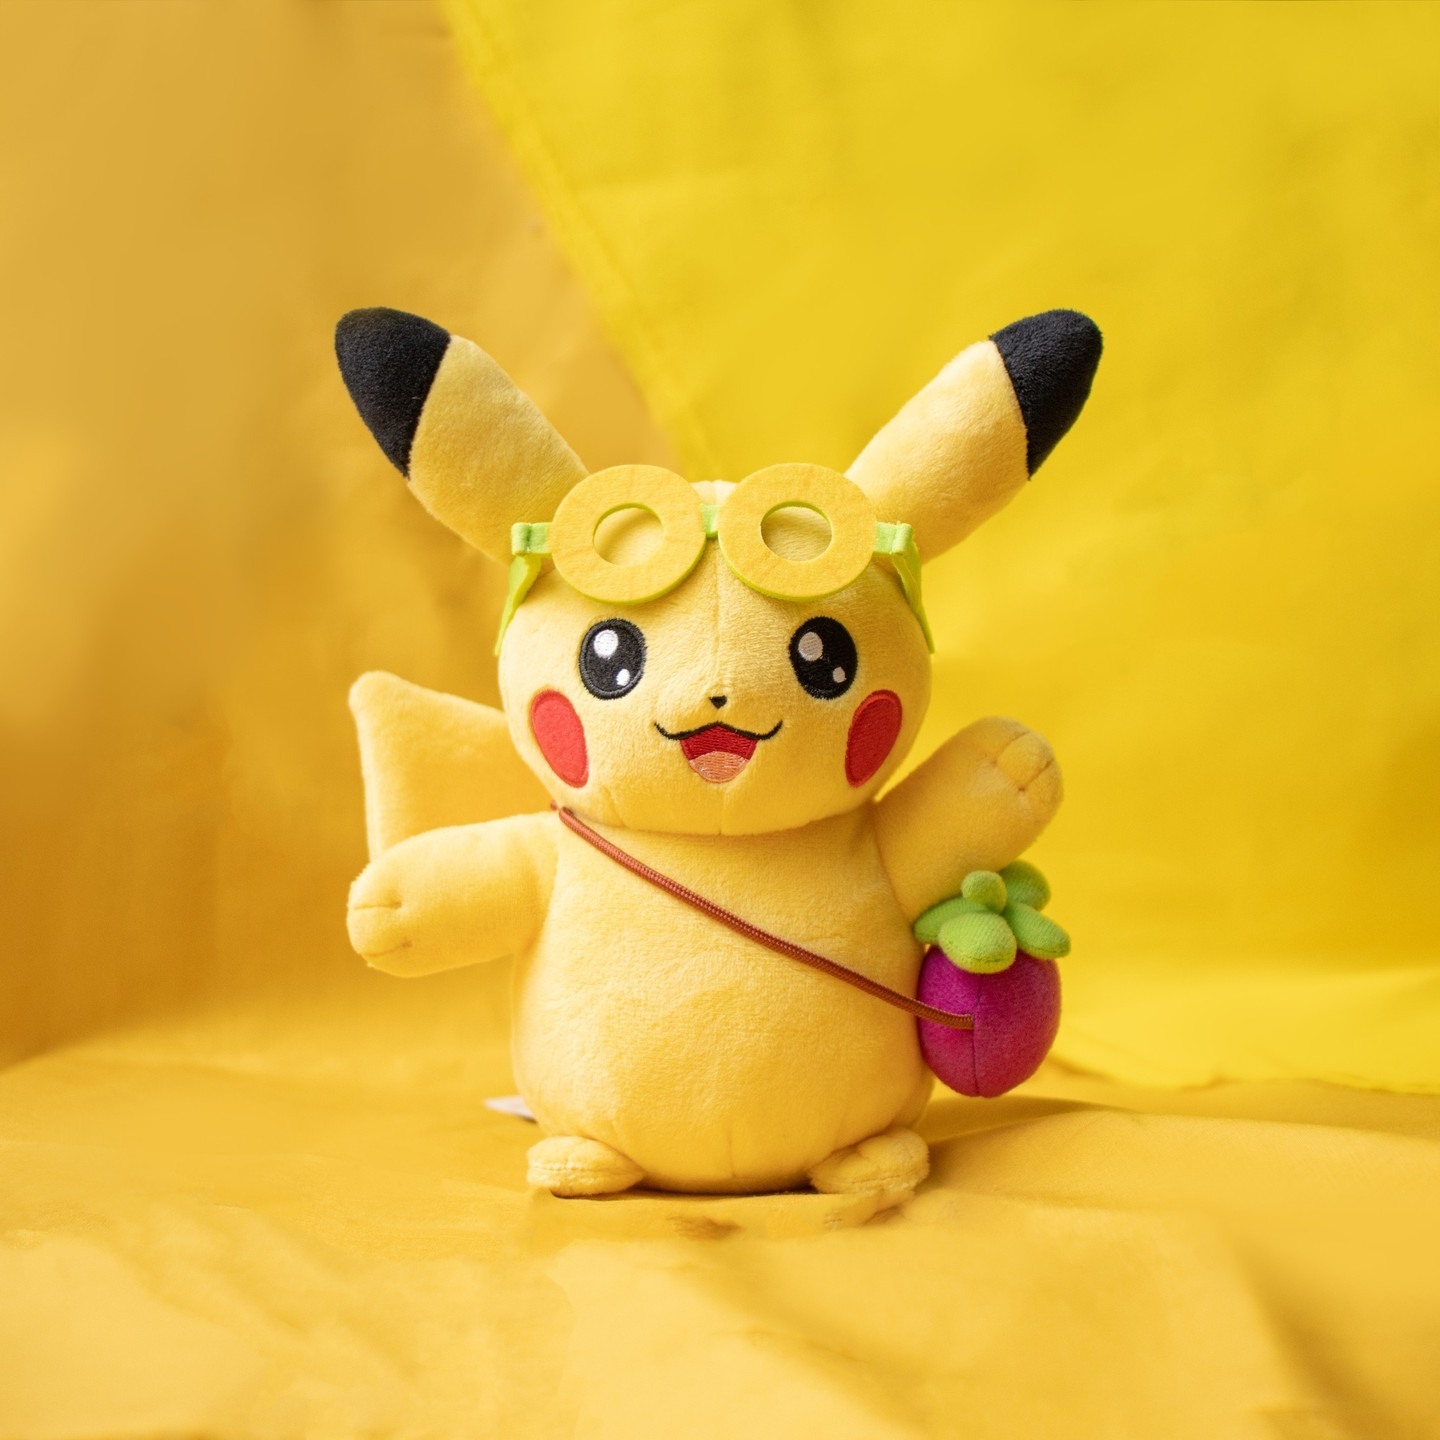 【速报】PokémonCenterTAIPEI开幕时间确定！多款原创宝可梦商品同步开卖